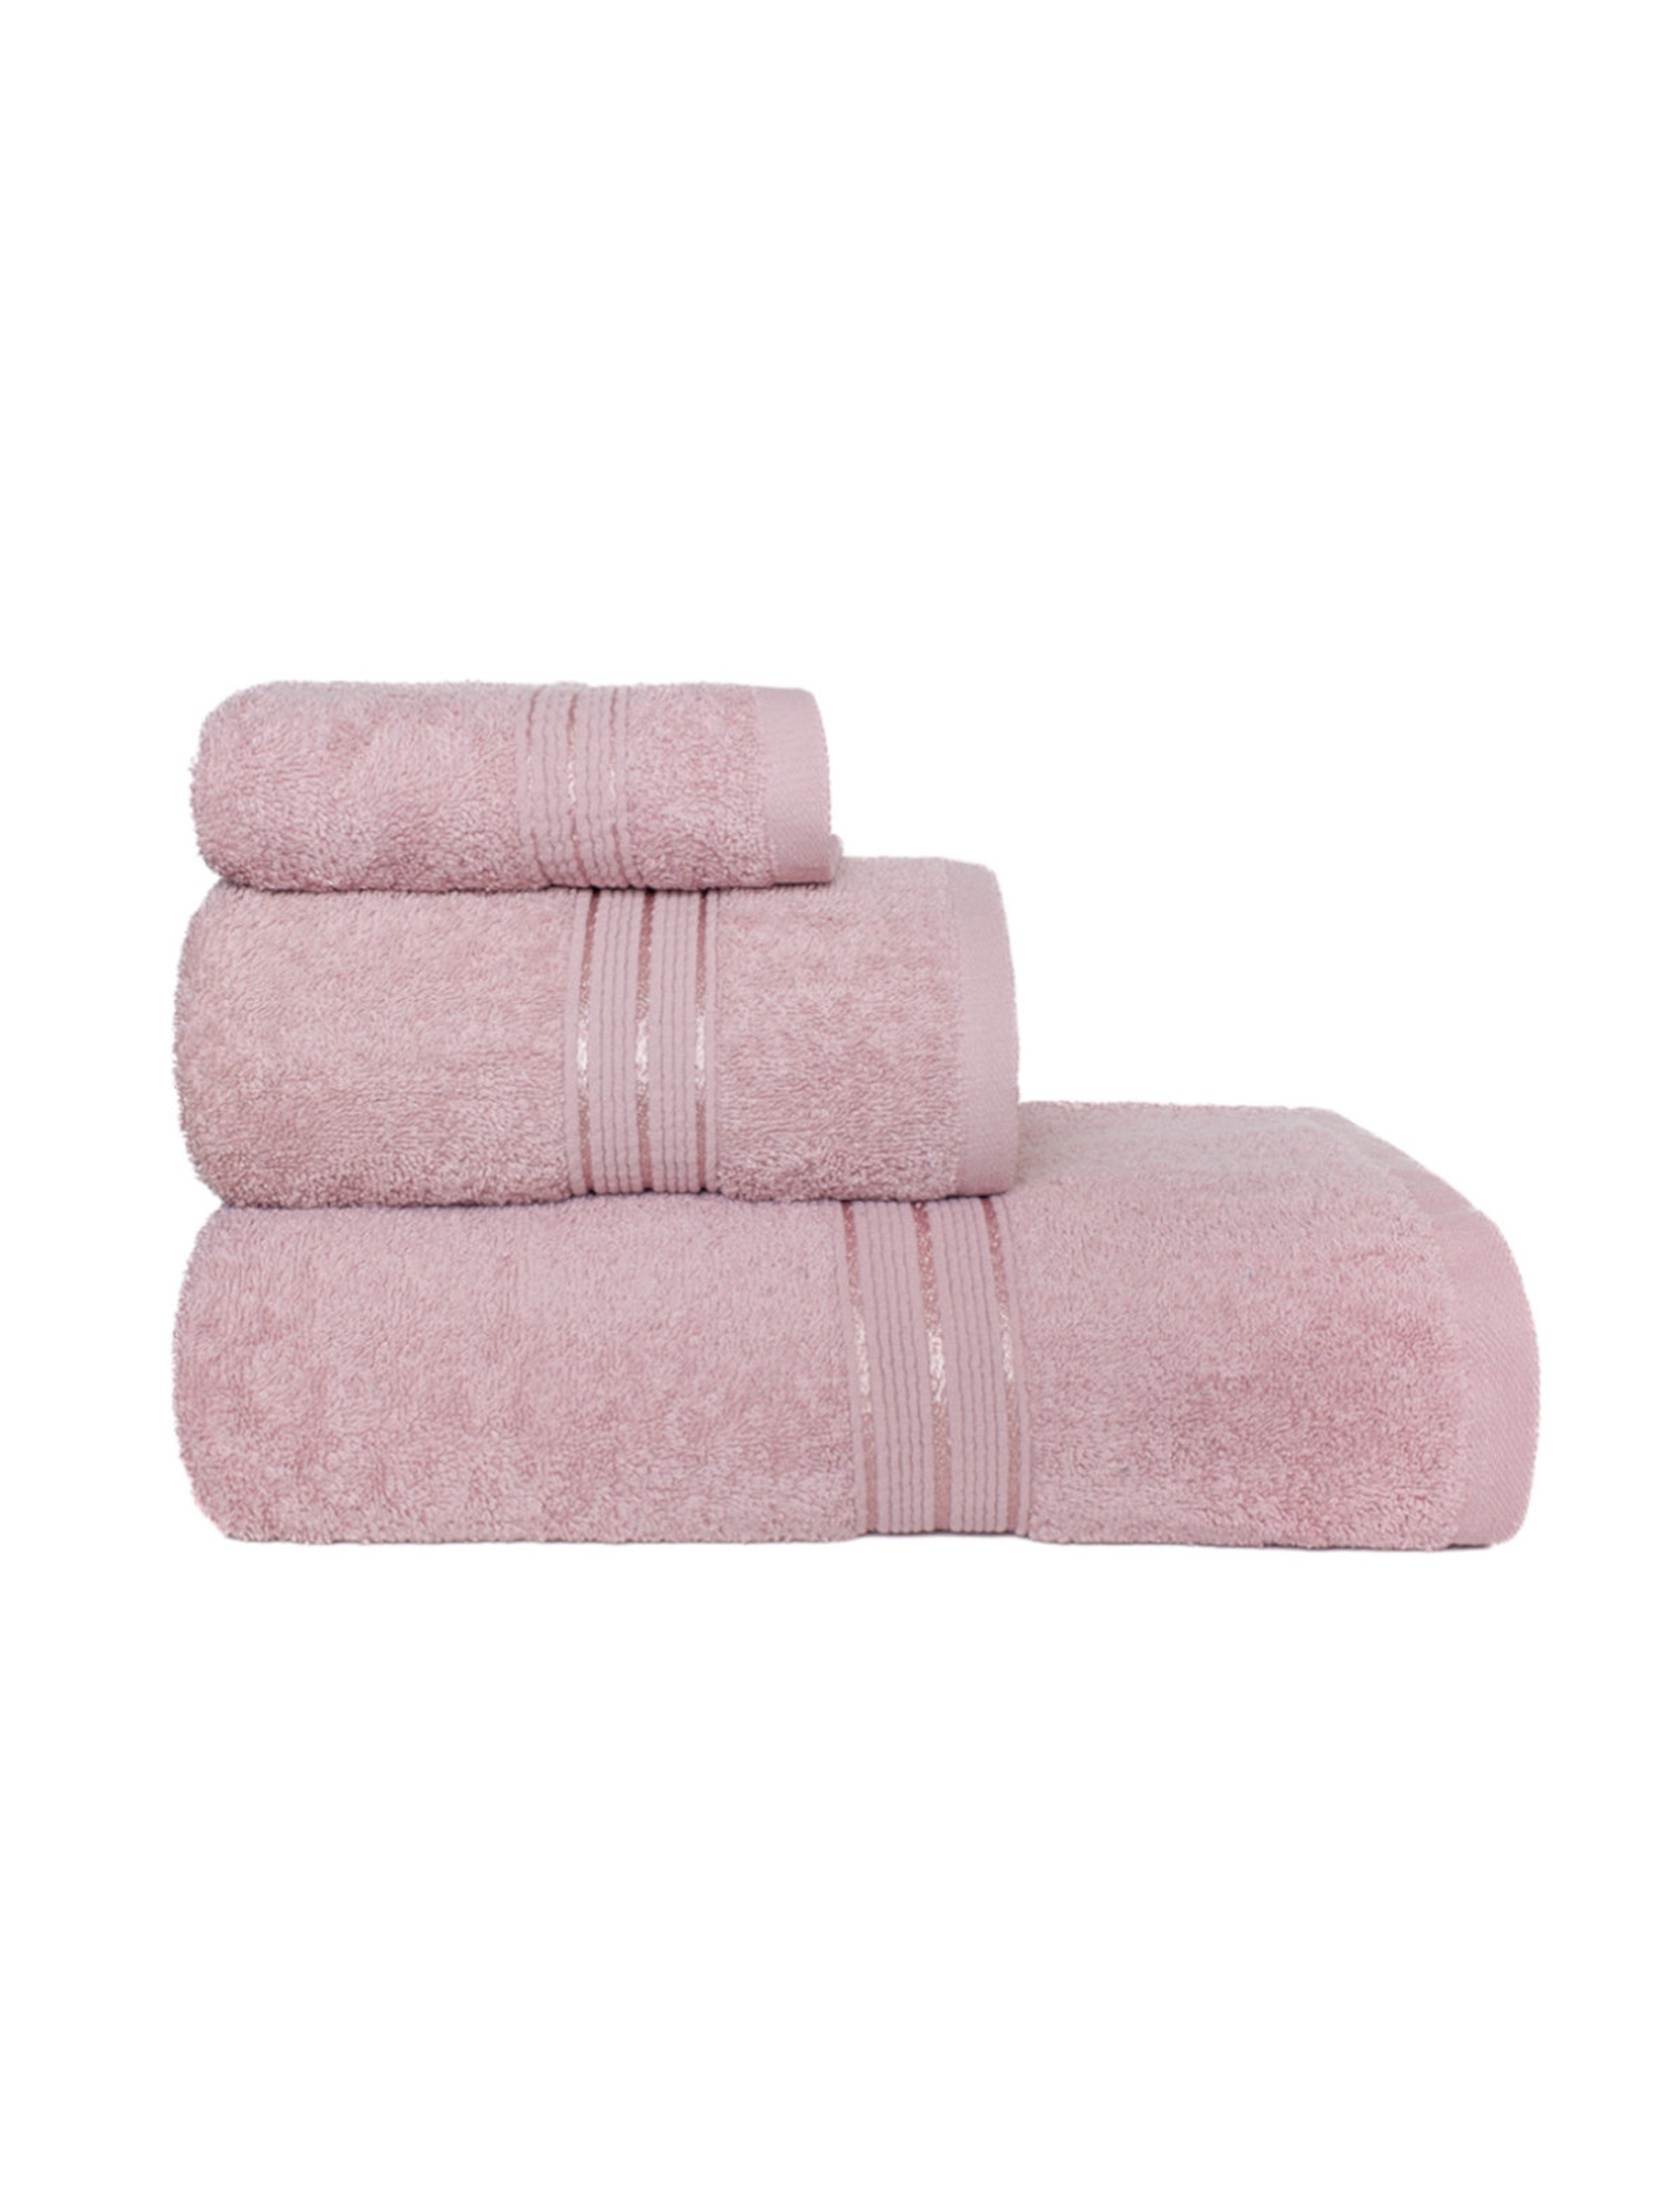 Ręcznik rondo 70x140 frotte różowy